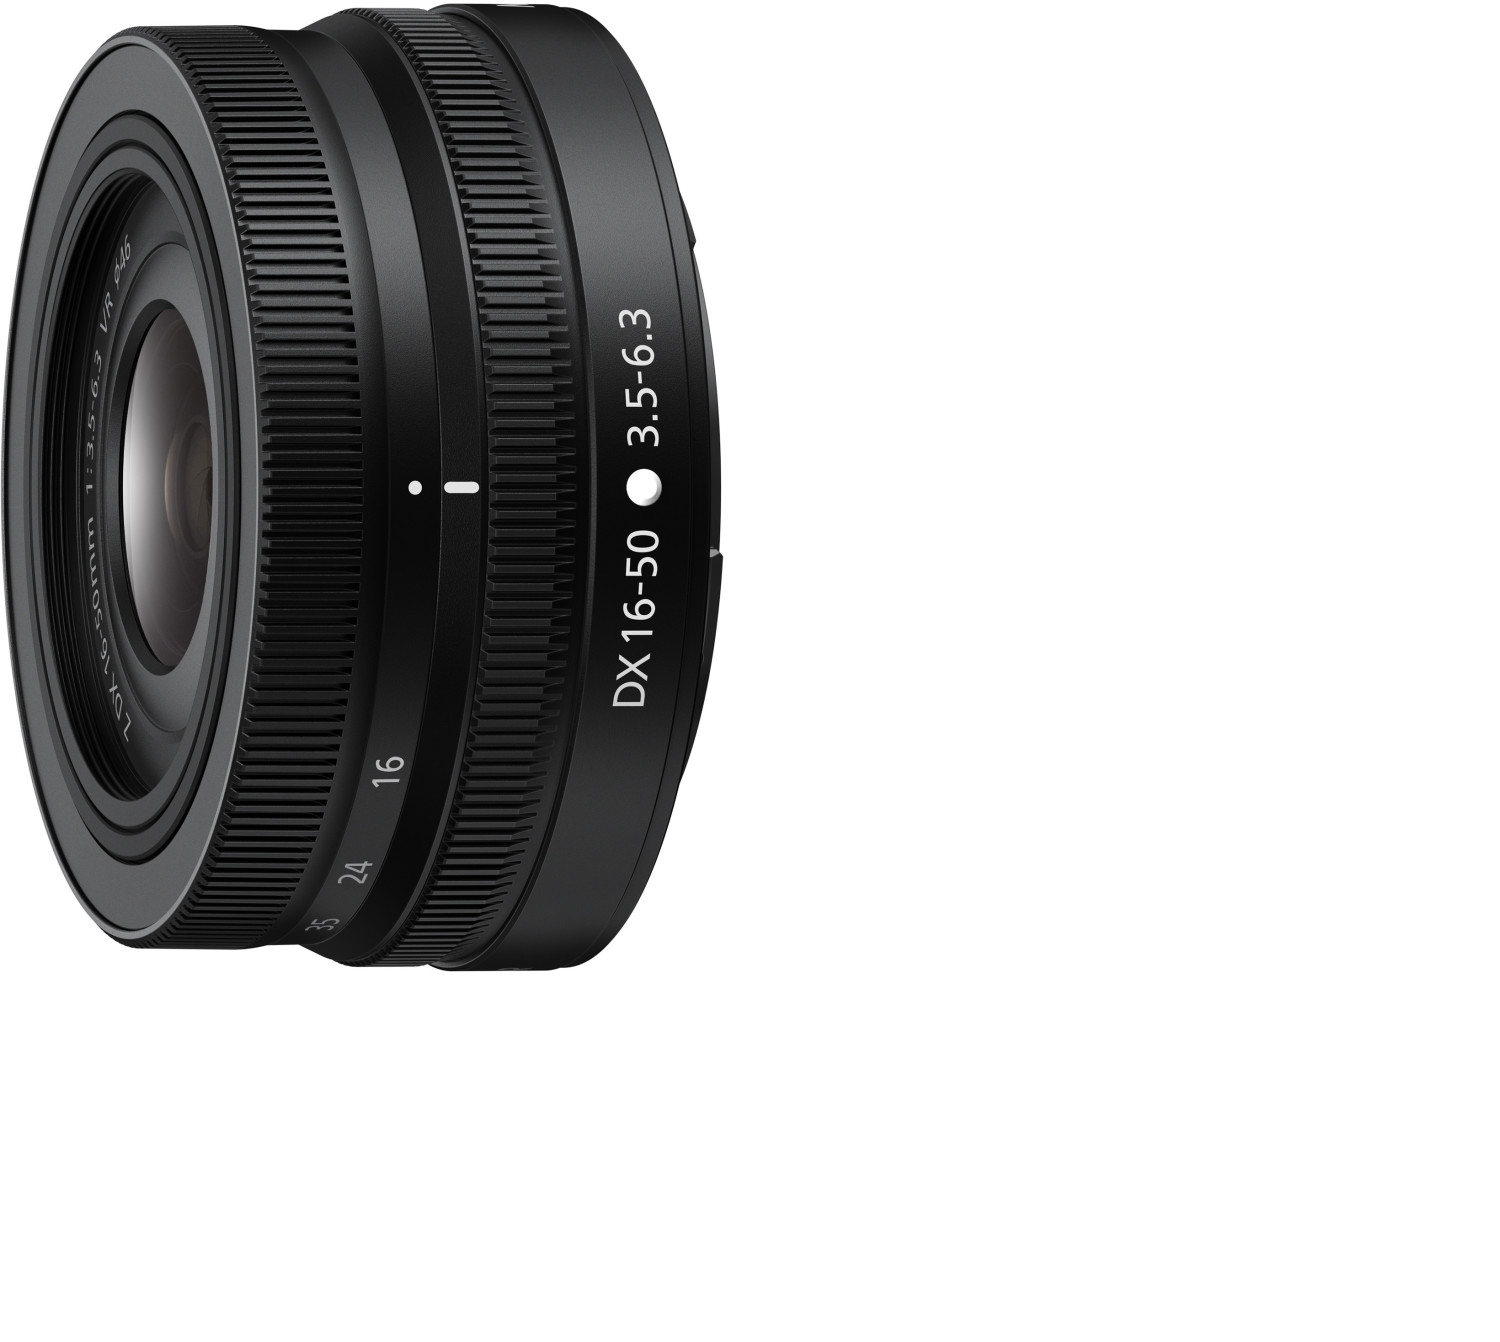 Nikon Nikkor Z DX 16-50mm 3.5-6.3 VR